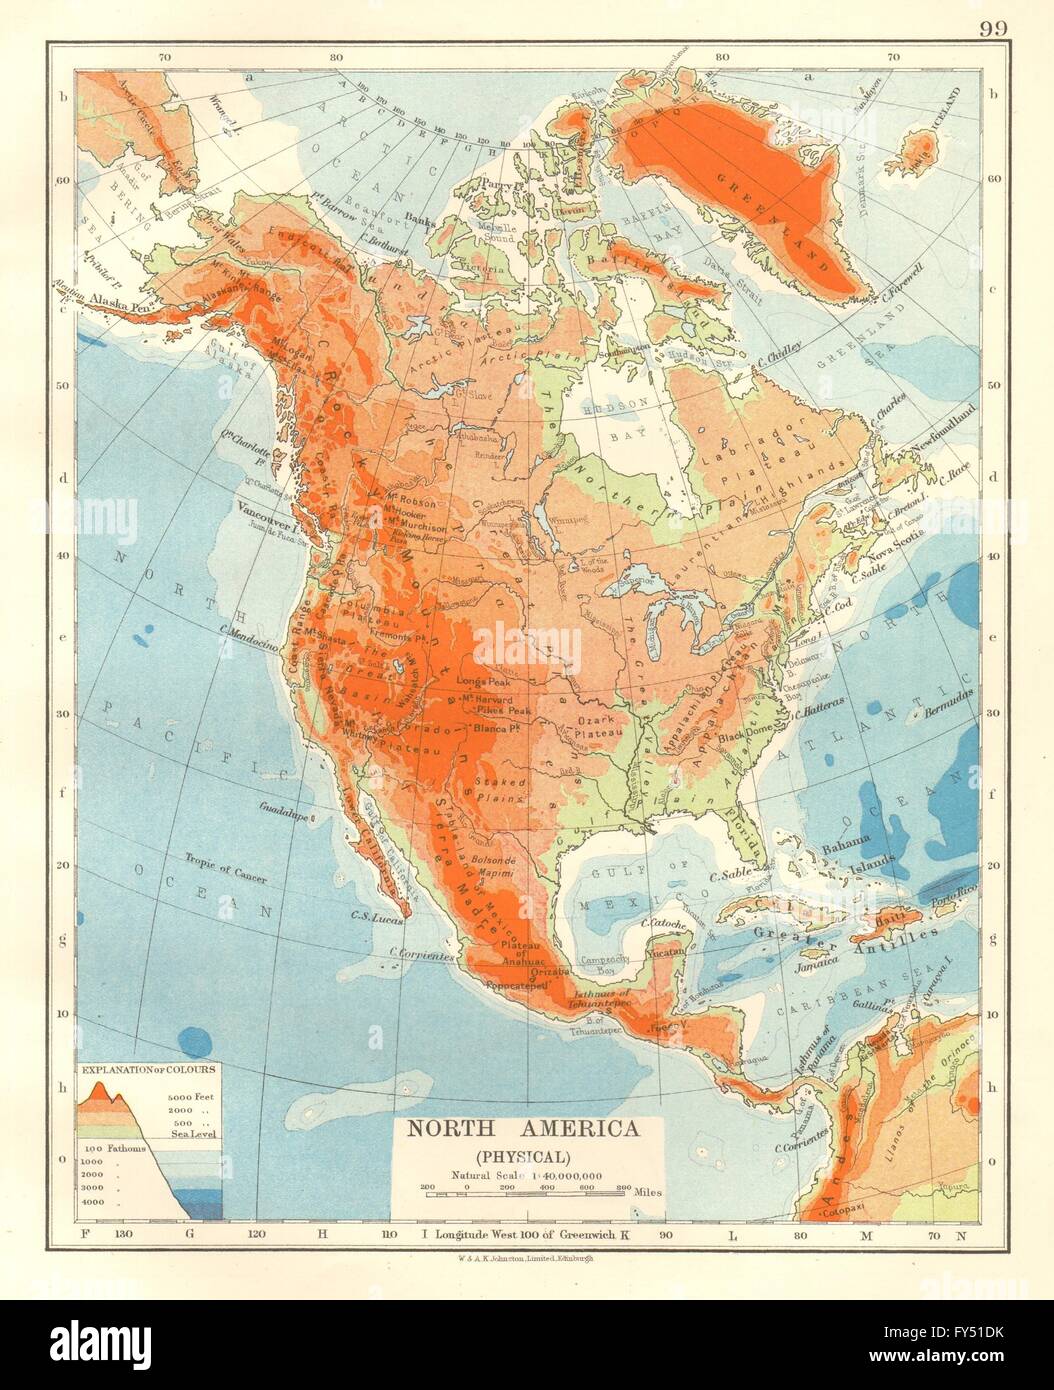 Горы северной америки физическая карта. Скалистые горы на карте Северной Америки. Скалистый хребет на карте Северной Америки. Скалистые горы на физической карте Северной Америки. Физическая карта Северной Америки.